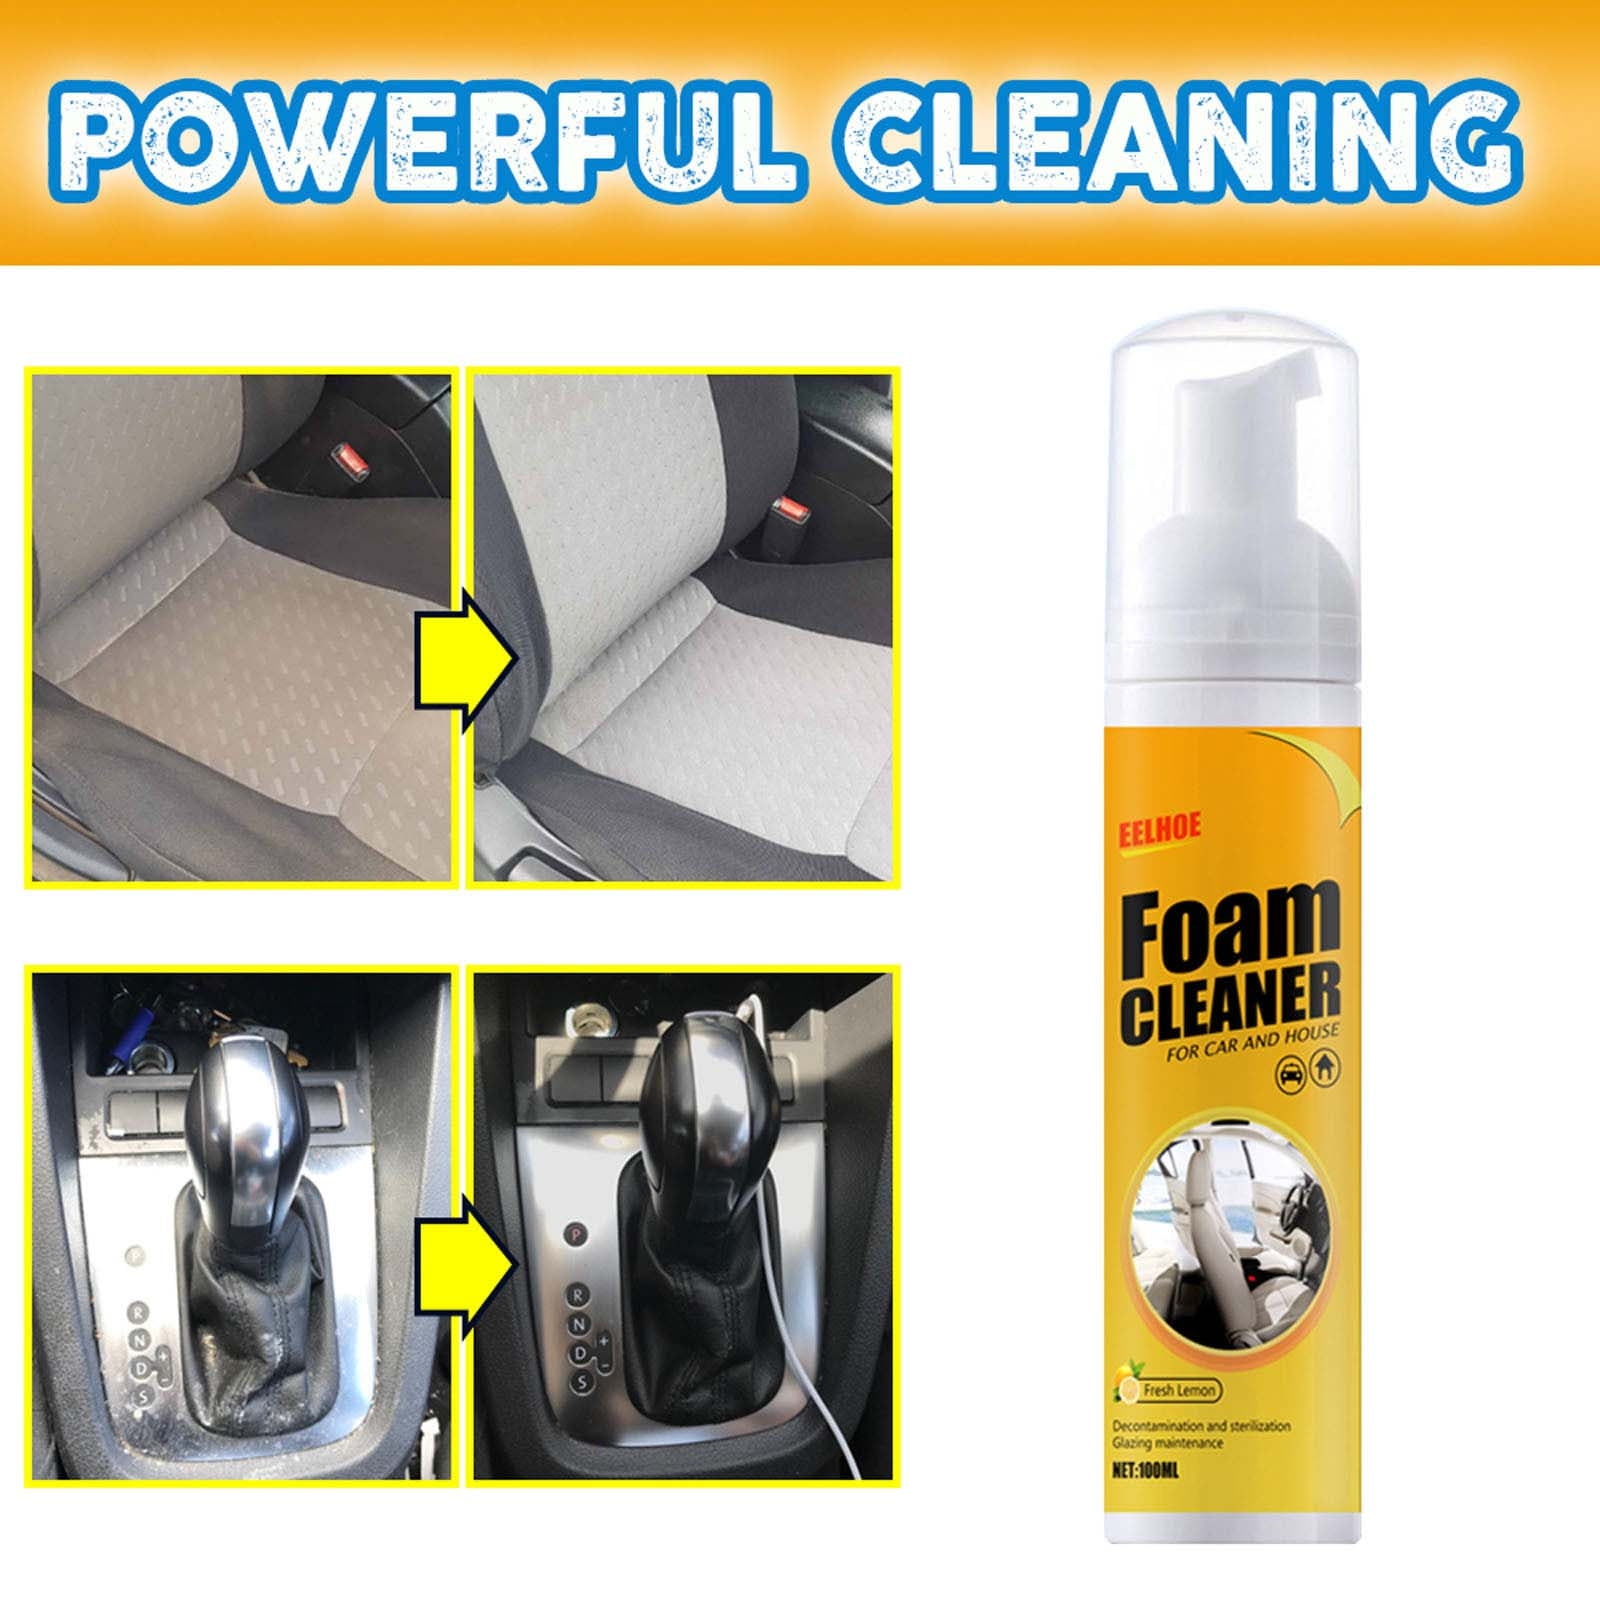 Auto Foam Cleaner Multi Purpose Foam Cleaner 650ml - China Multi